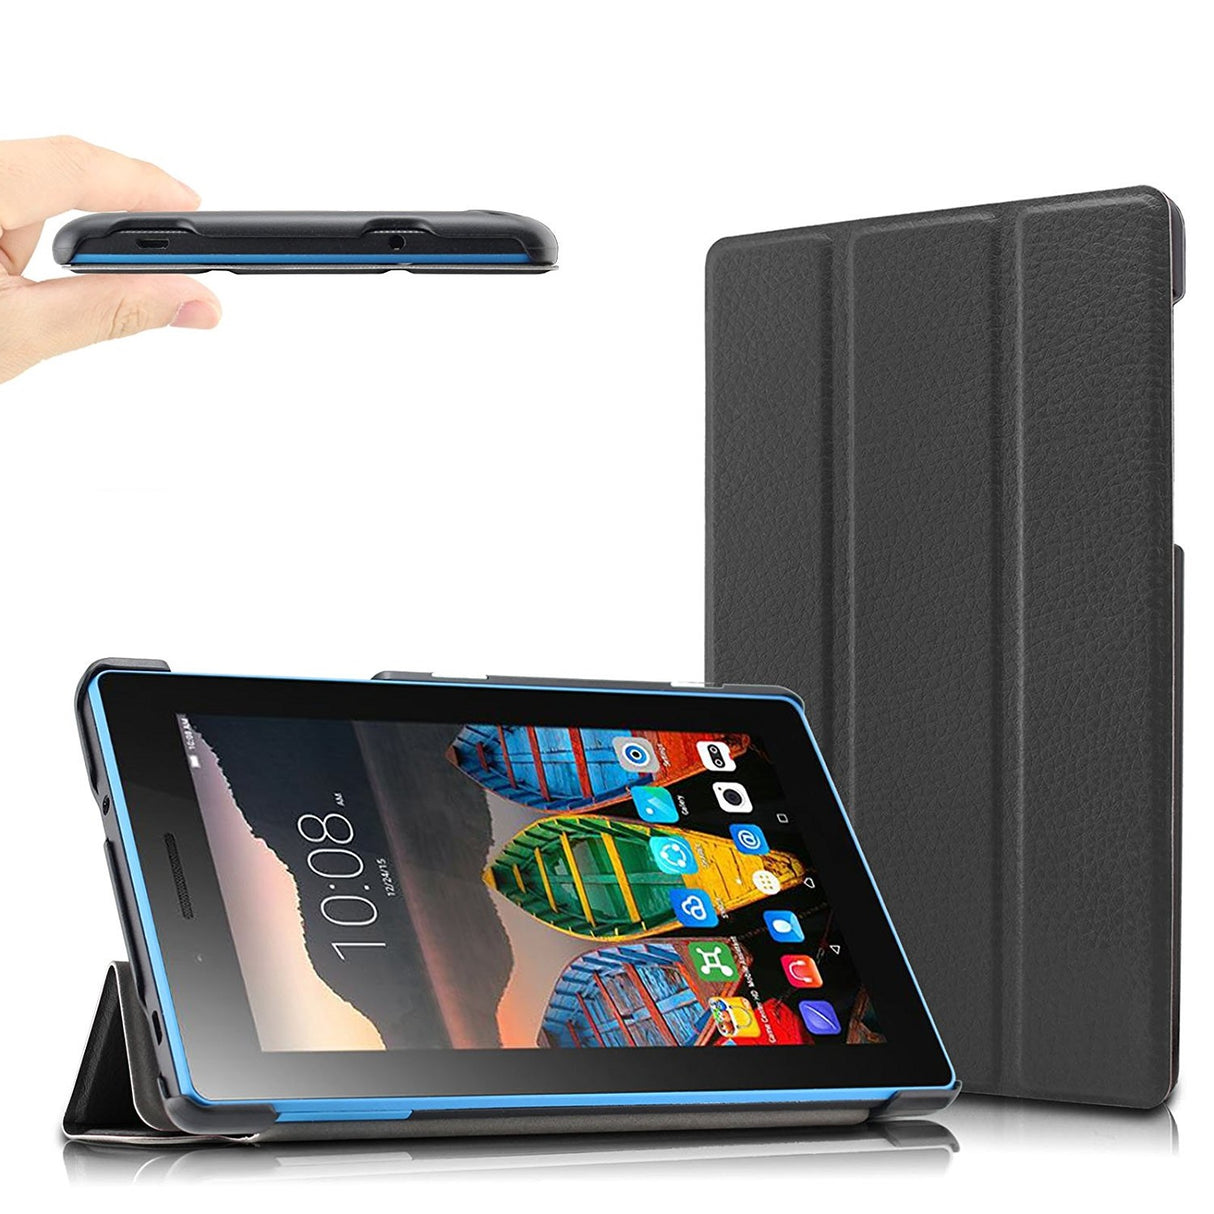 Capa 3 Dobras Smart Case Trifold Slim para Lenovo Tab 3 8 Plus - Multi4you®